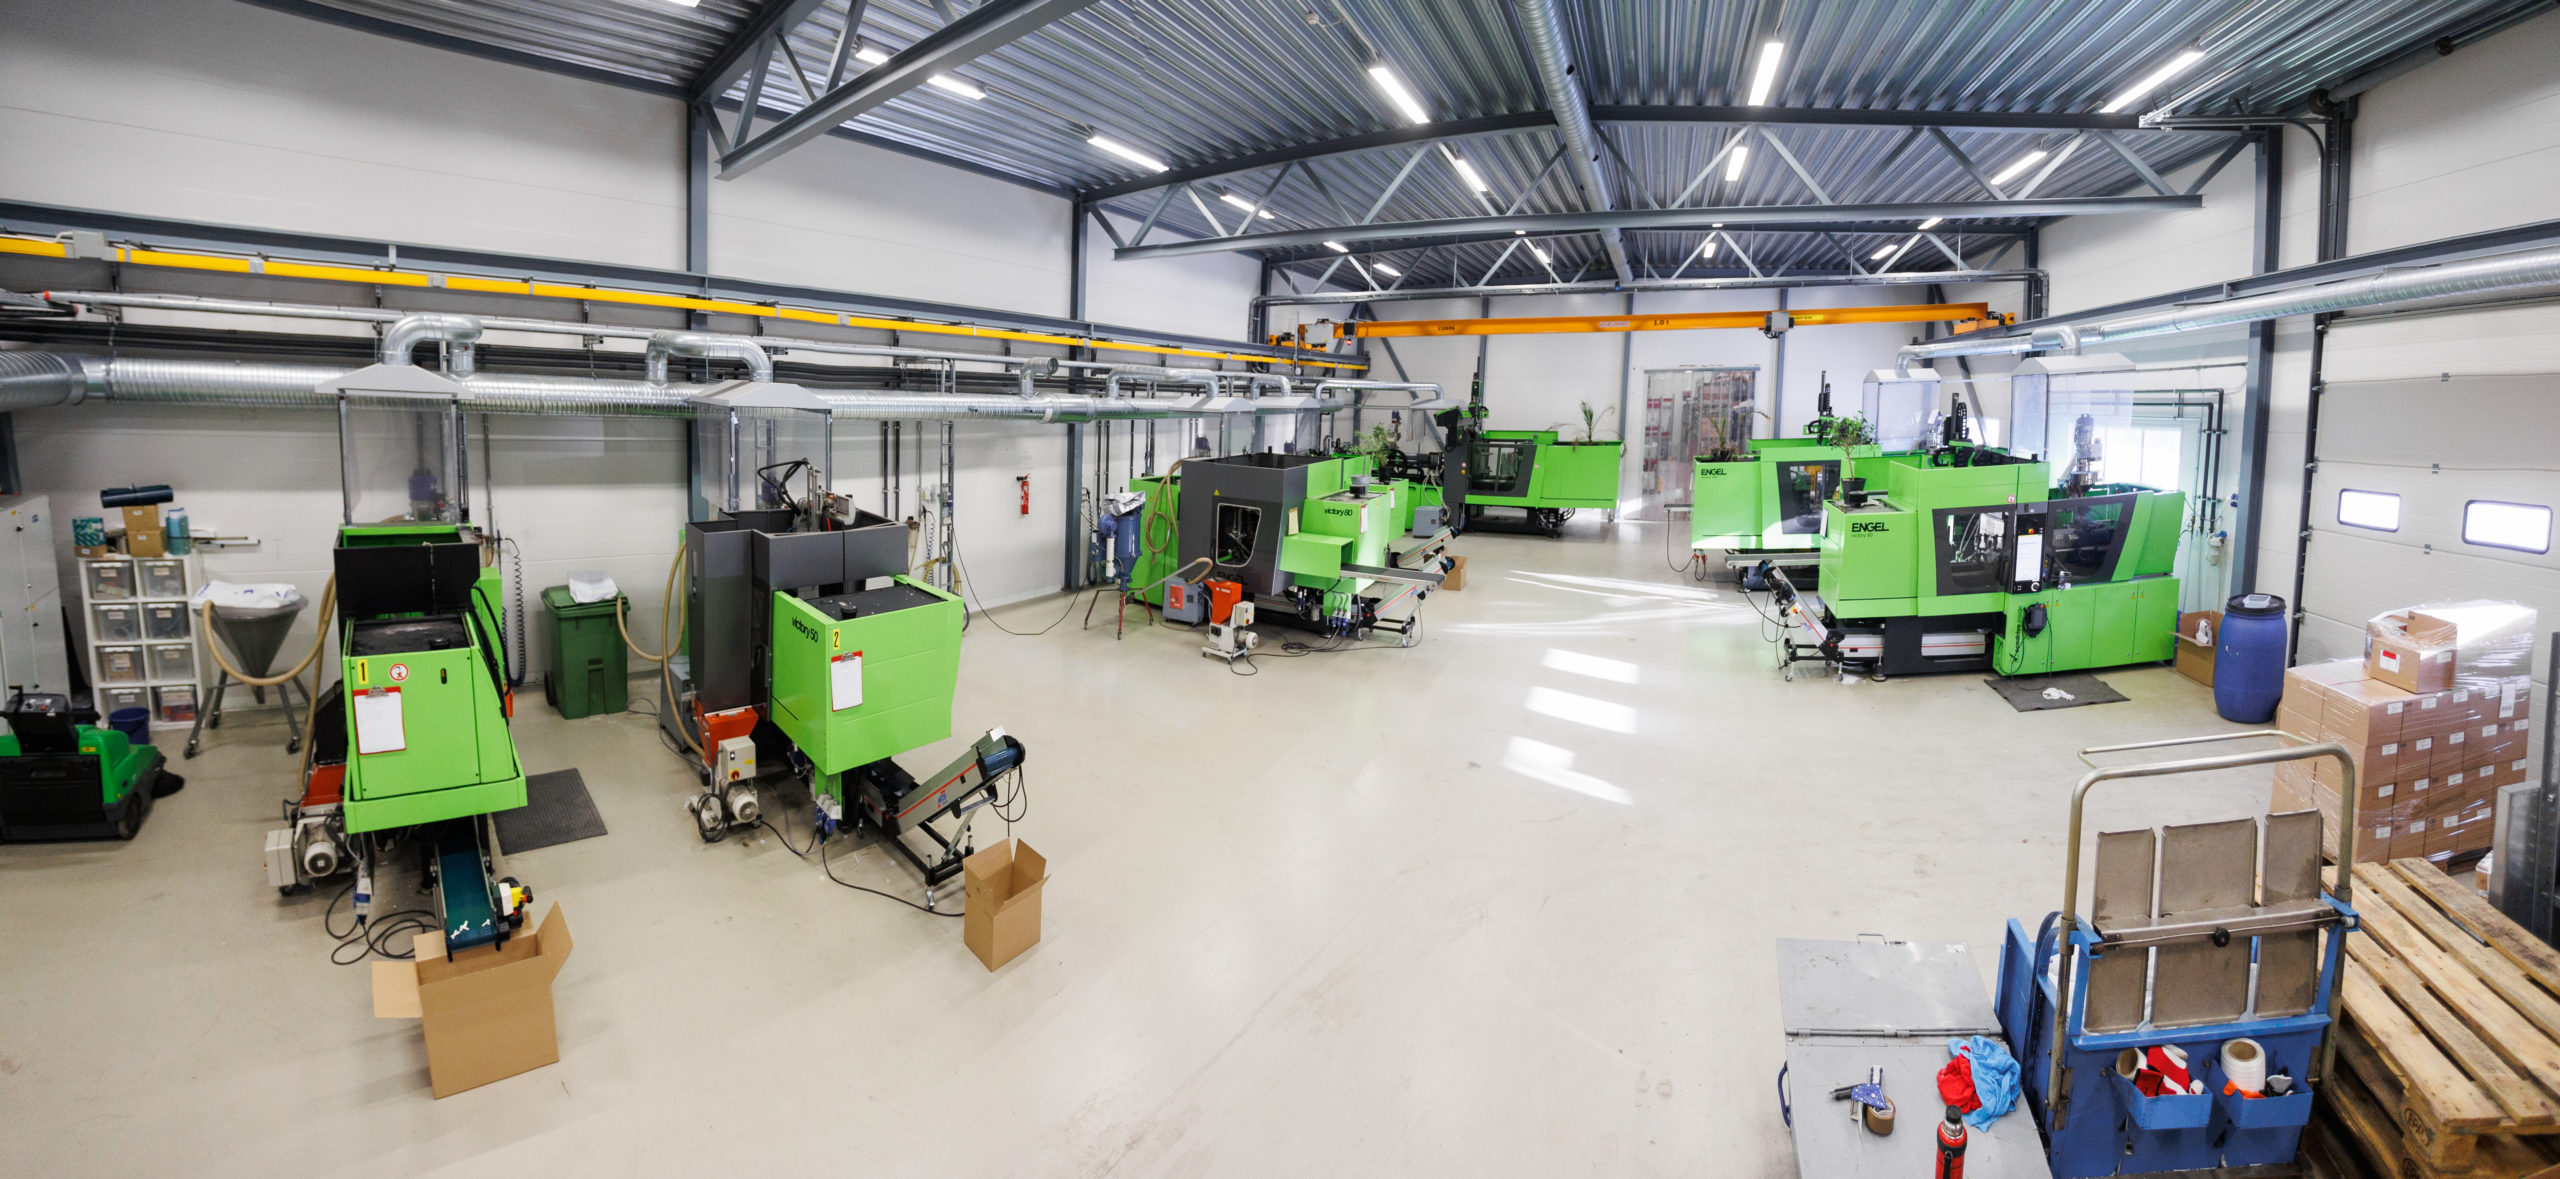 Verksted produksjonshall med flere grønne maskiner, en moderne maskinpark